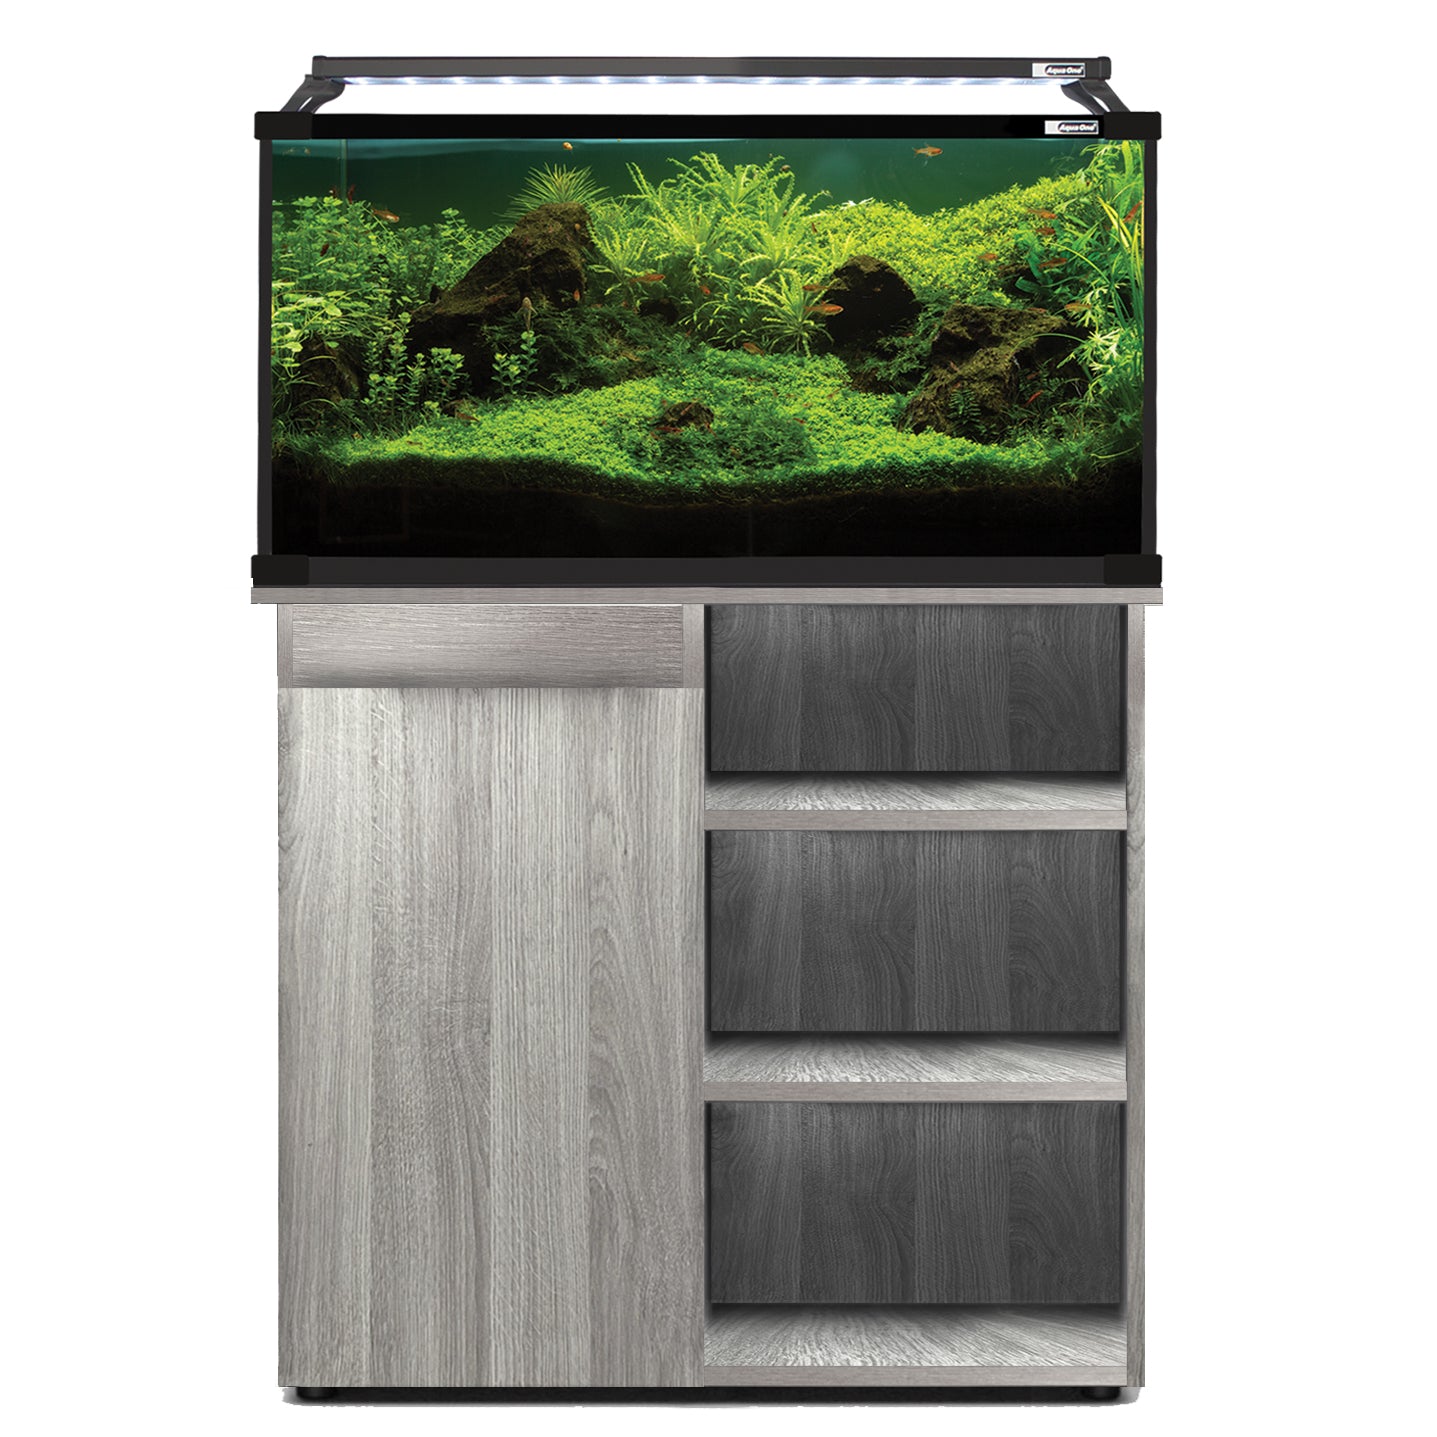 Aqua One Horizon Aquarium Fish Tank & Cabinet 93cm 130L